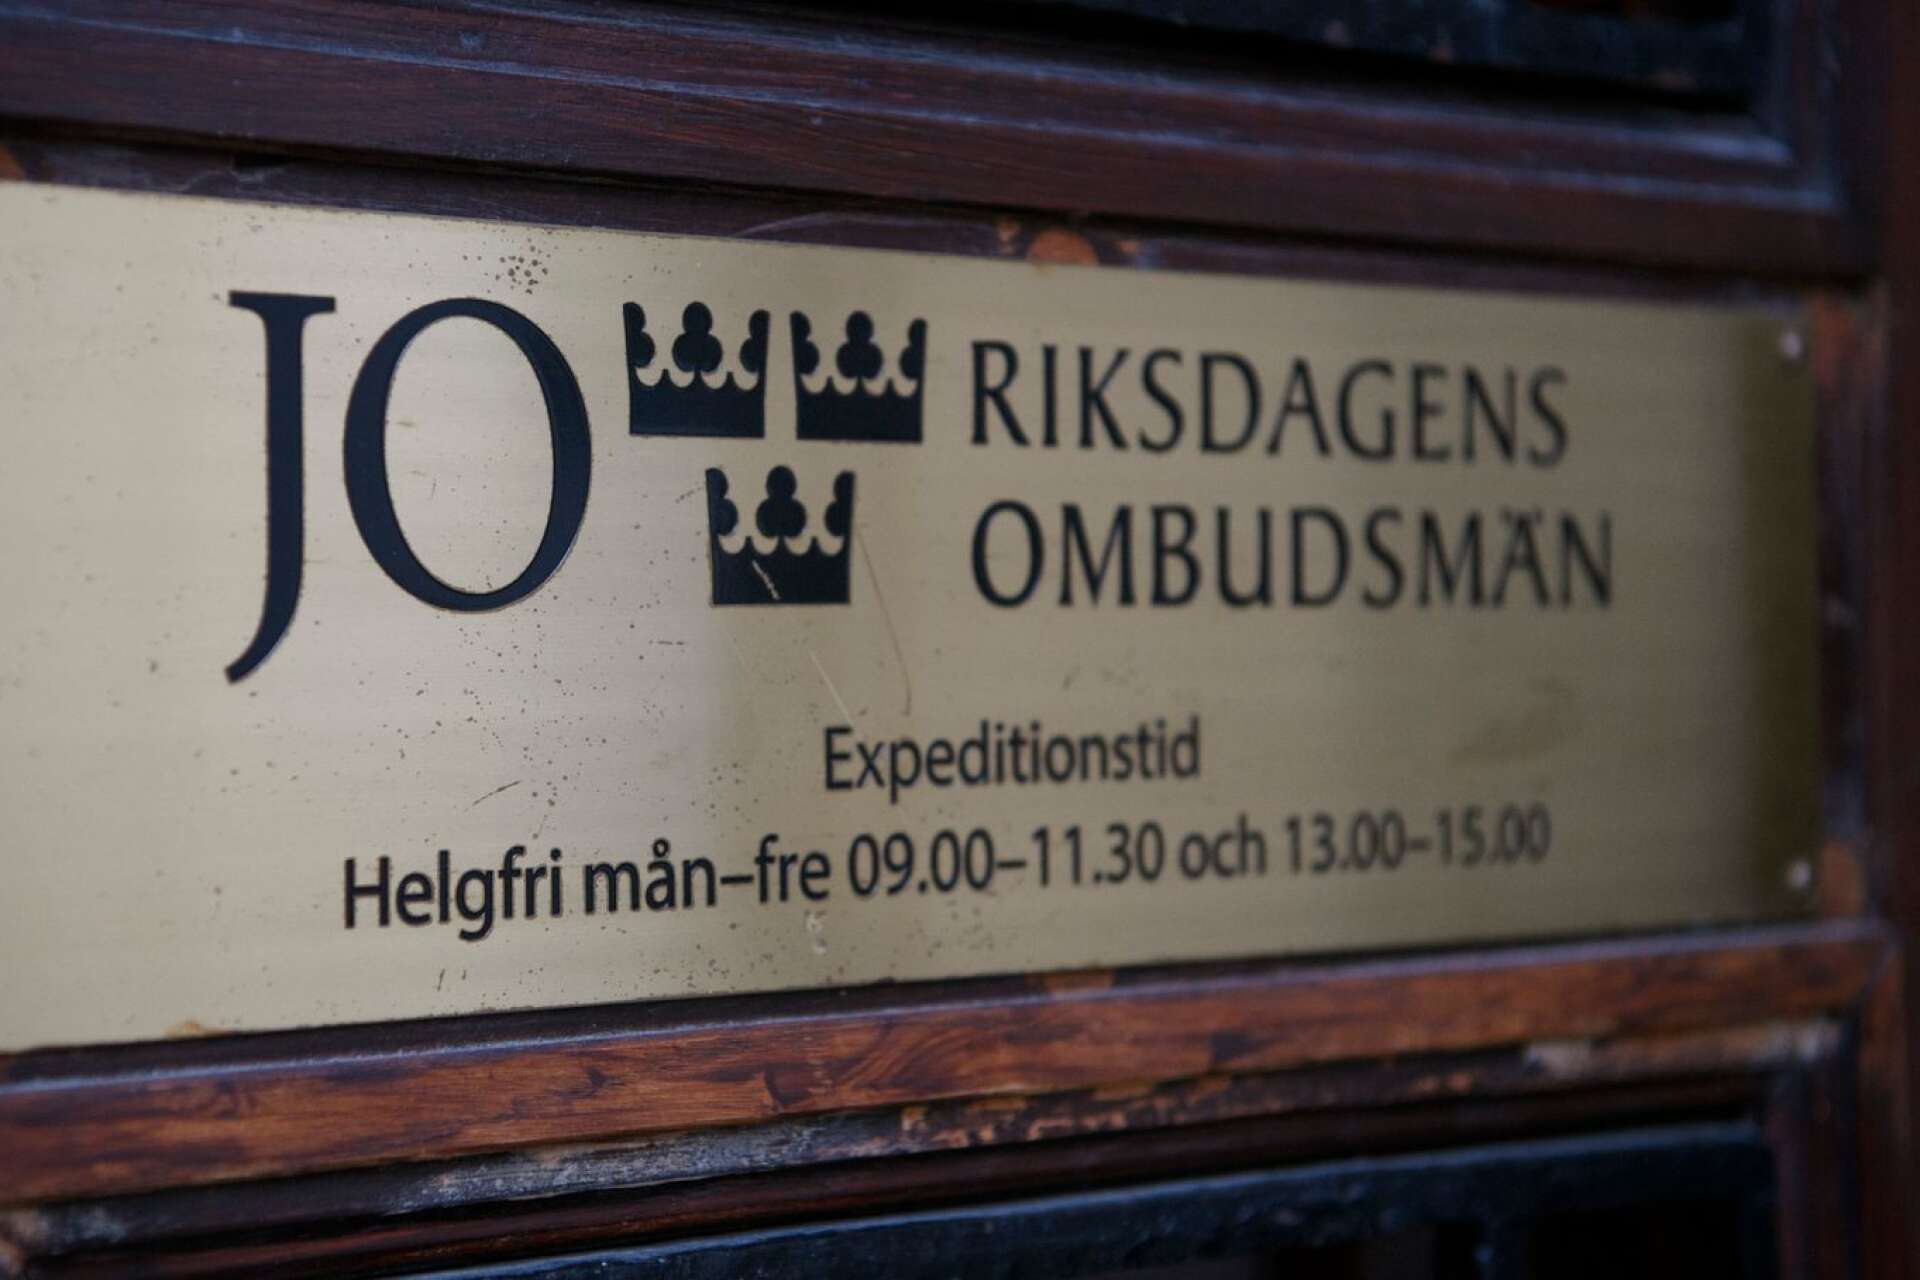 Justitieombudsmannen (JO) har fått en anmälan av en privatperson som riktar kritik mot tingrsätten i Örebro. Genrebild.